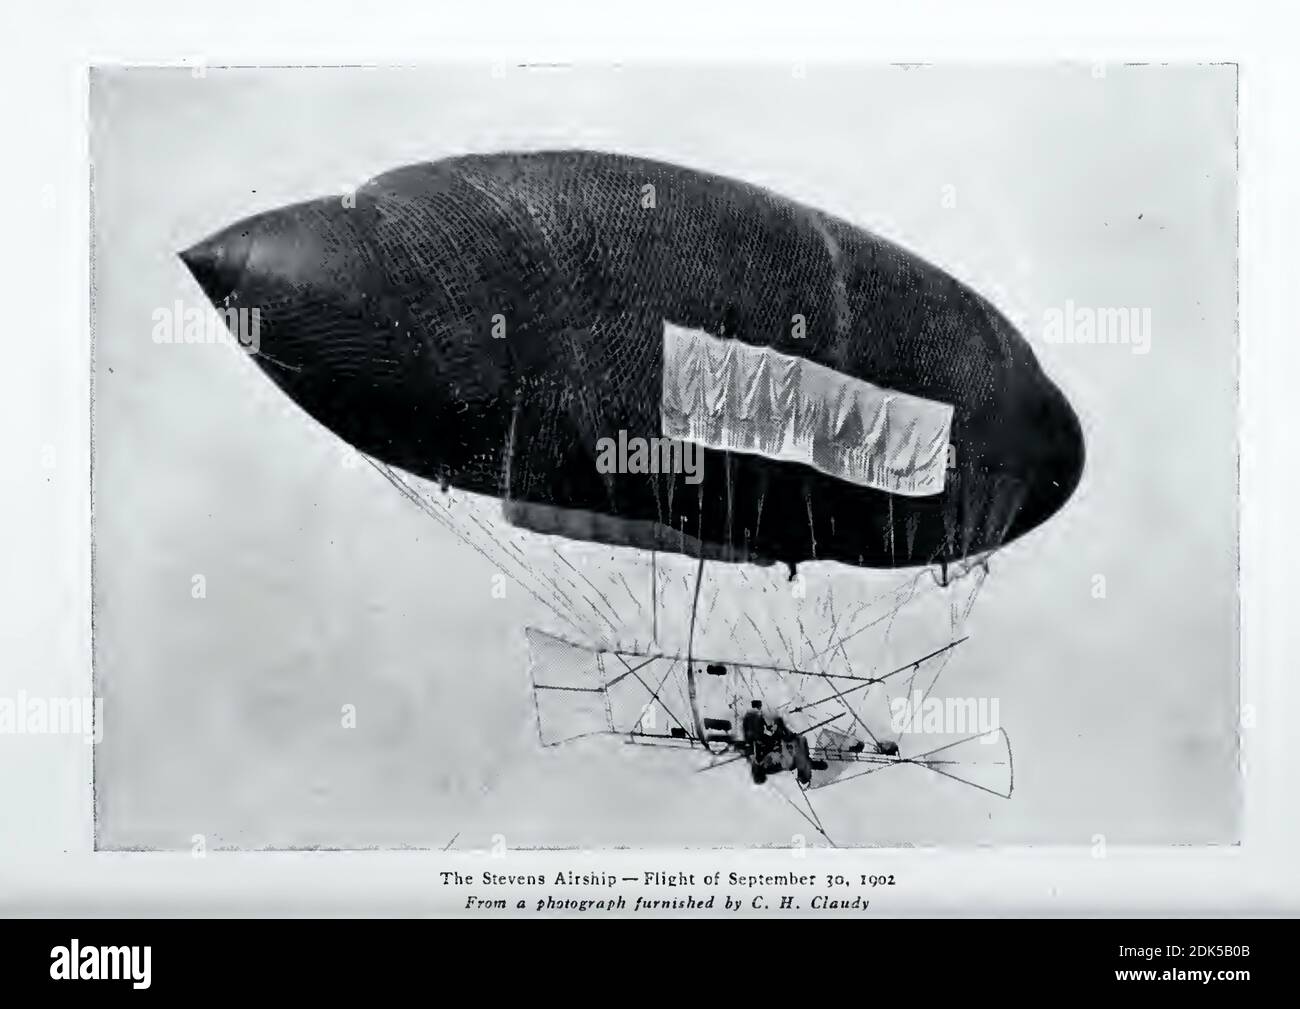 Photographie vintage de l'Airship Stevens - vol du 30 septembre 1902. Photographie historique des premiers jours de l'aviation. Banque D'Images